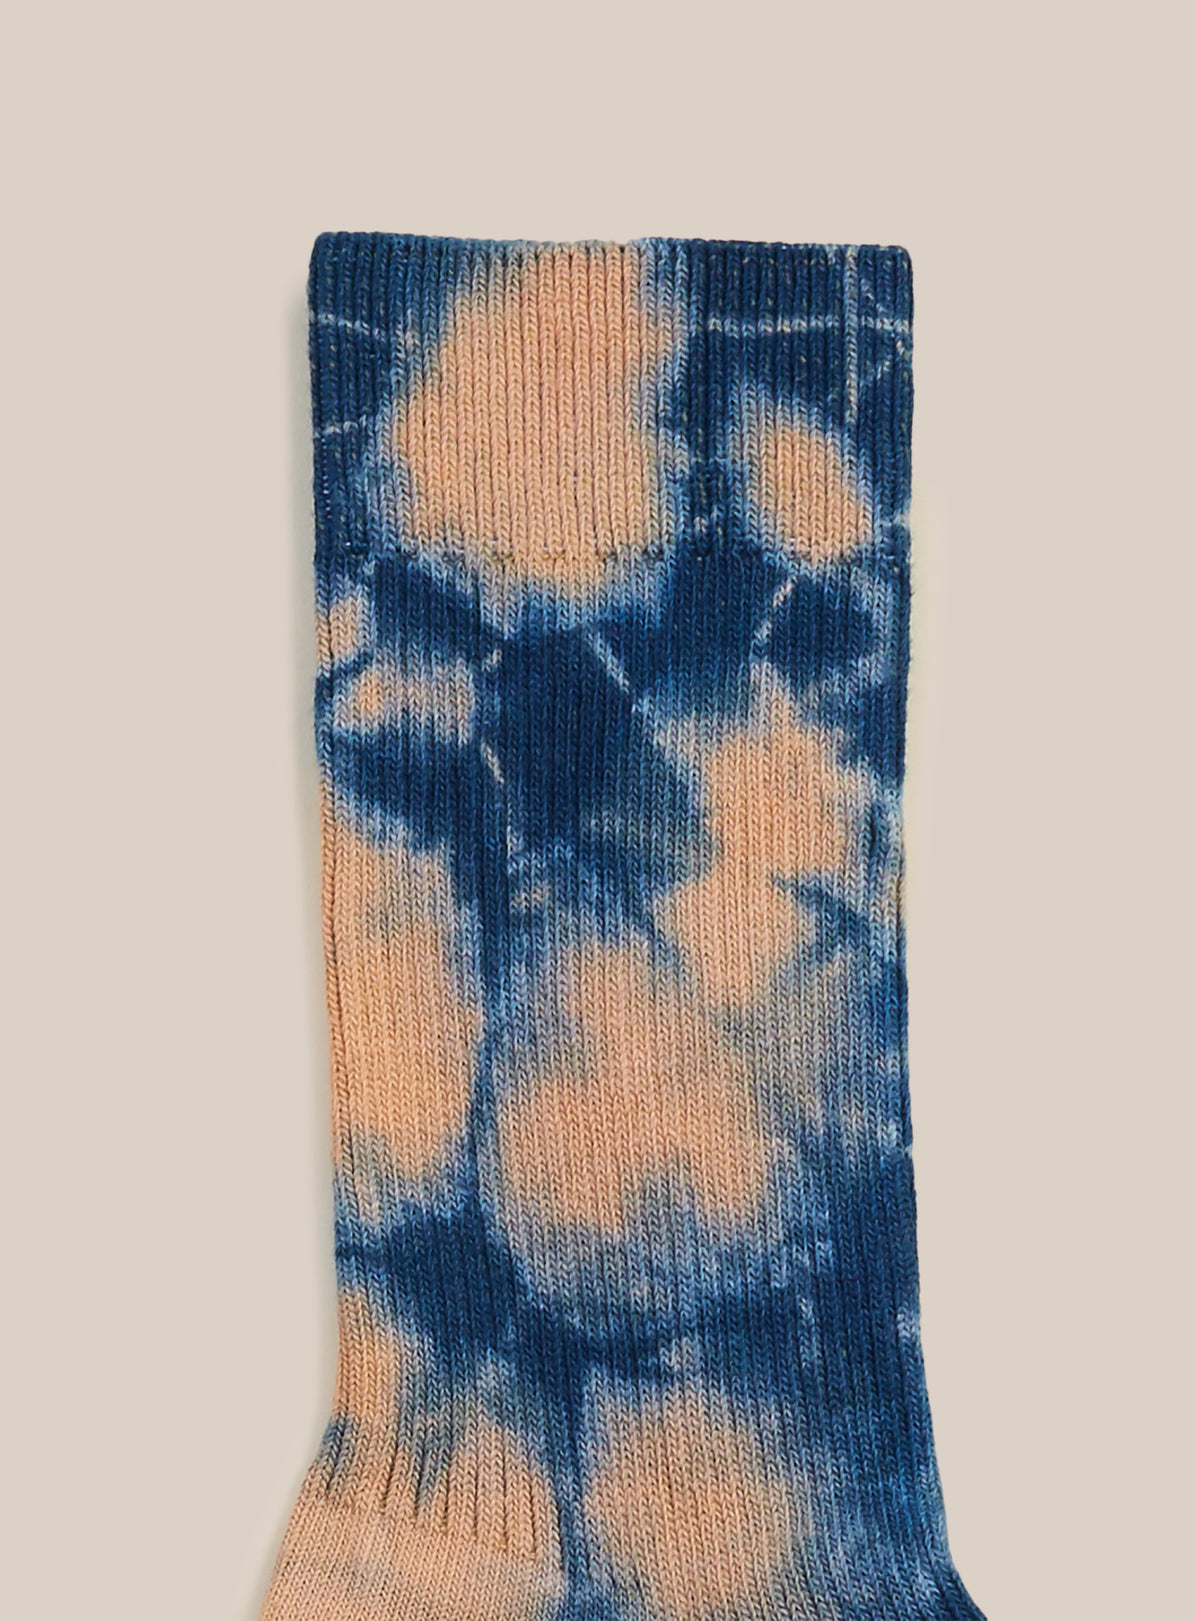 Hand Tie-Dyed Pradu Sock By Philip Huang